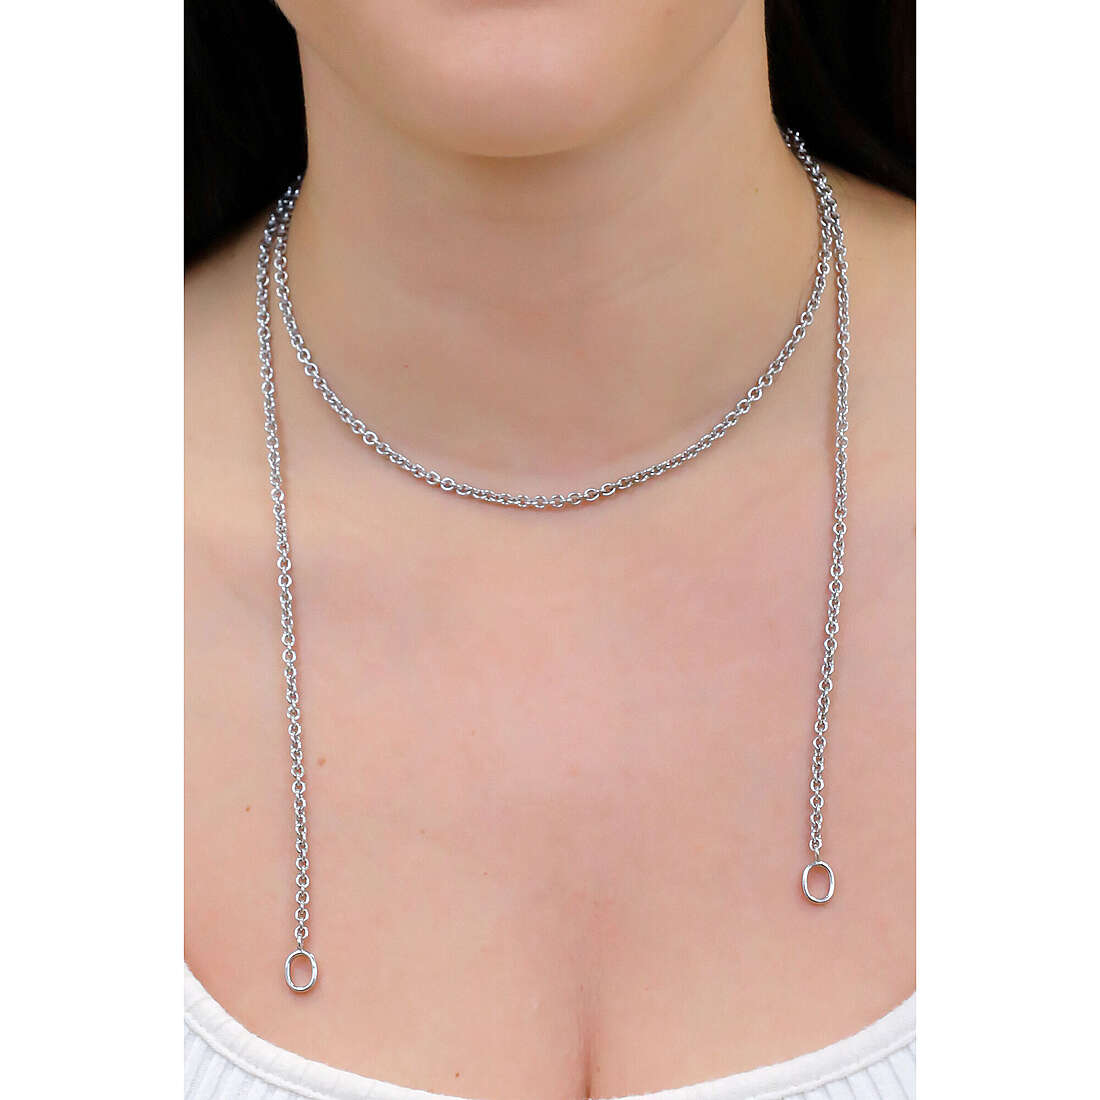 TI SENTO MILANO necklaces woman 3524SI/48 wearing